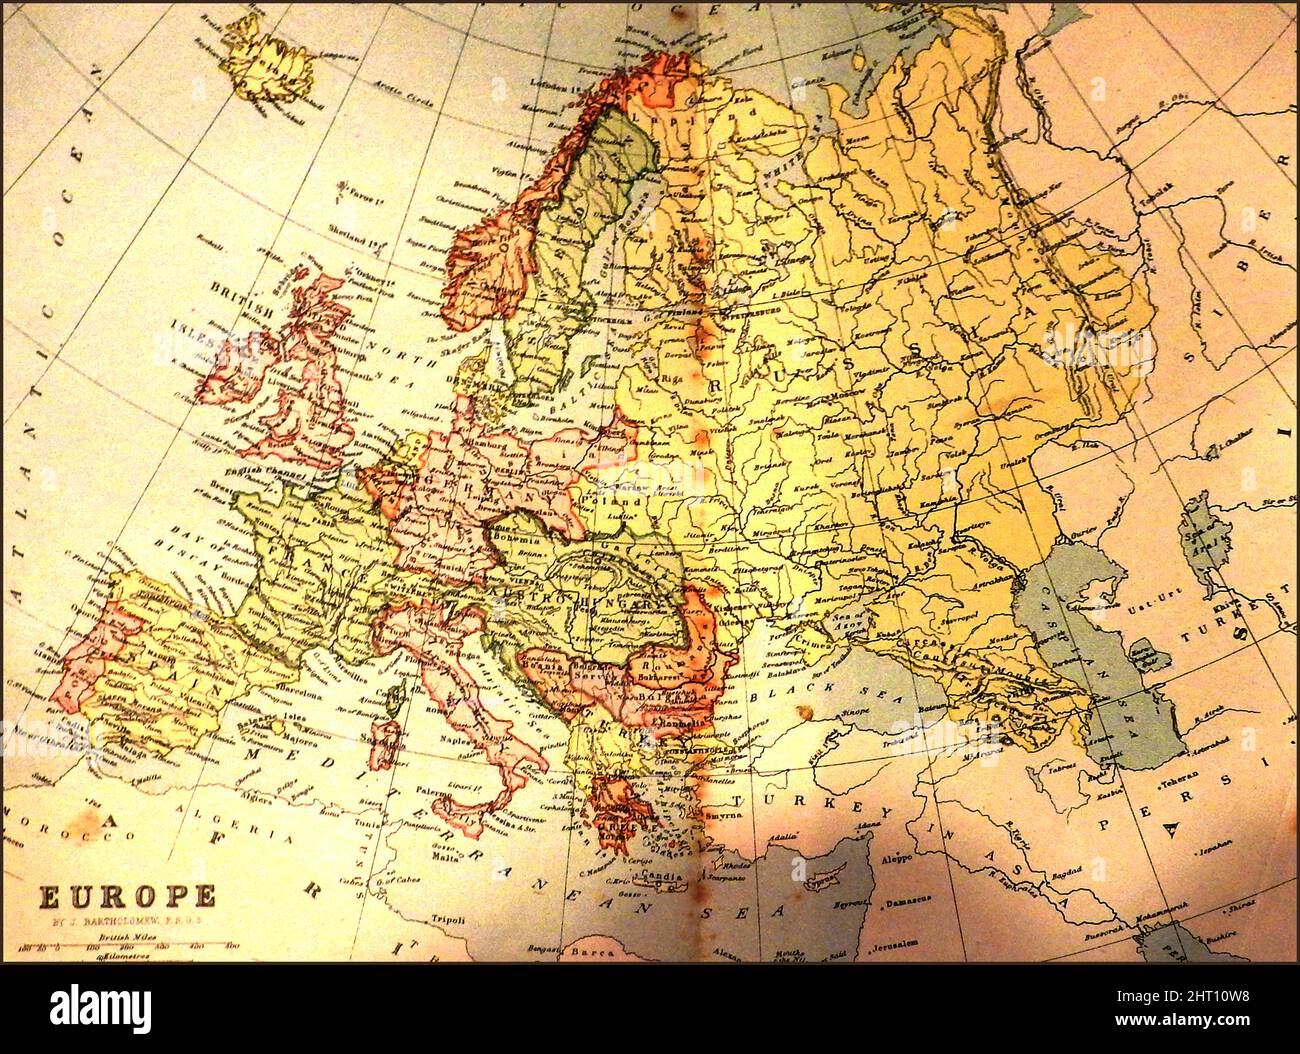 Une carte scolaire en couleur de l'Europe datant du 19th siècle montrant les pays et les frontières tels qu'ils étaient à l'époque Banque D'Images